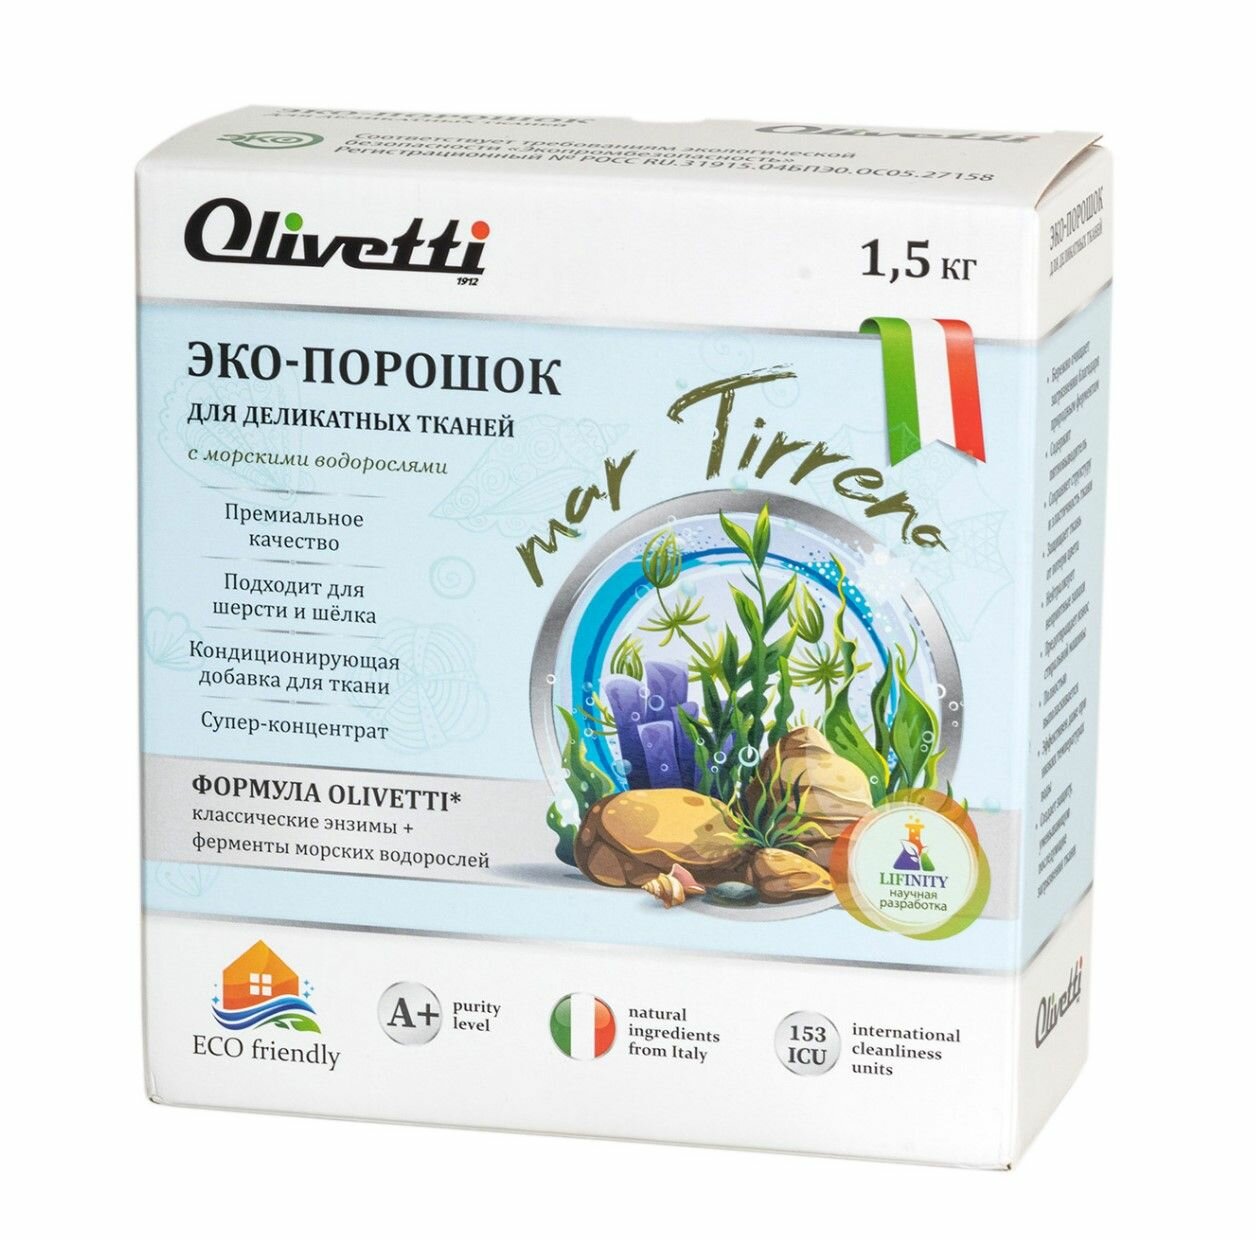 Эко-порошок Olivetti концентрат для стирки деликатных тканей Водоросли подходит для шерсти и шелка натуральные ингредиенты из Италии 15 кг